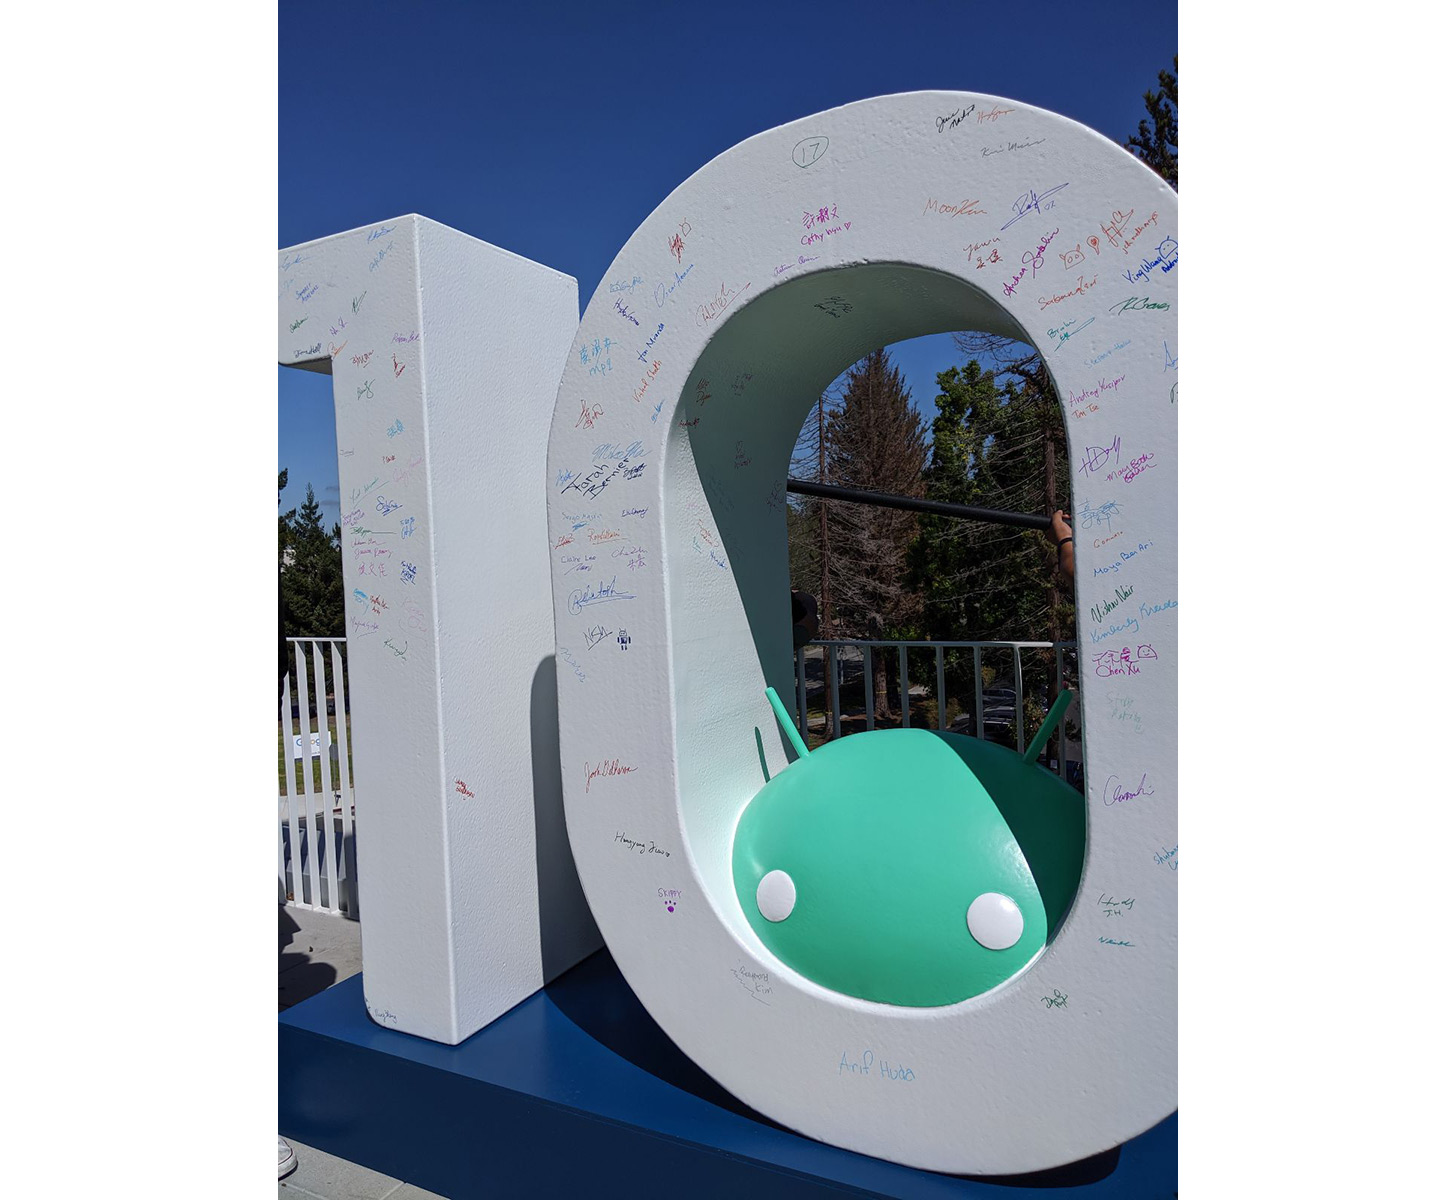 Patung Android 10 ditambahkan ke kampus Google